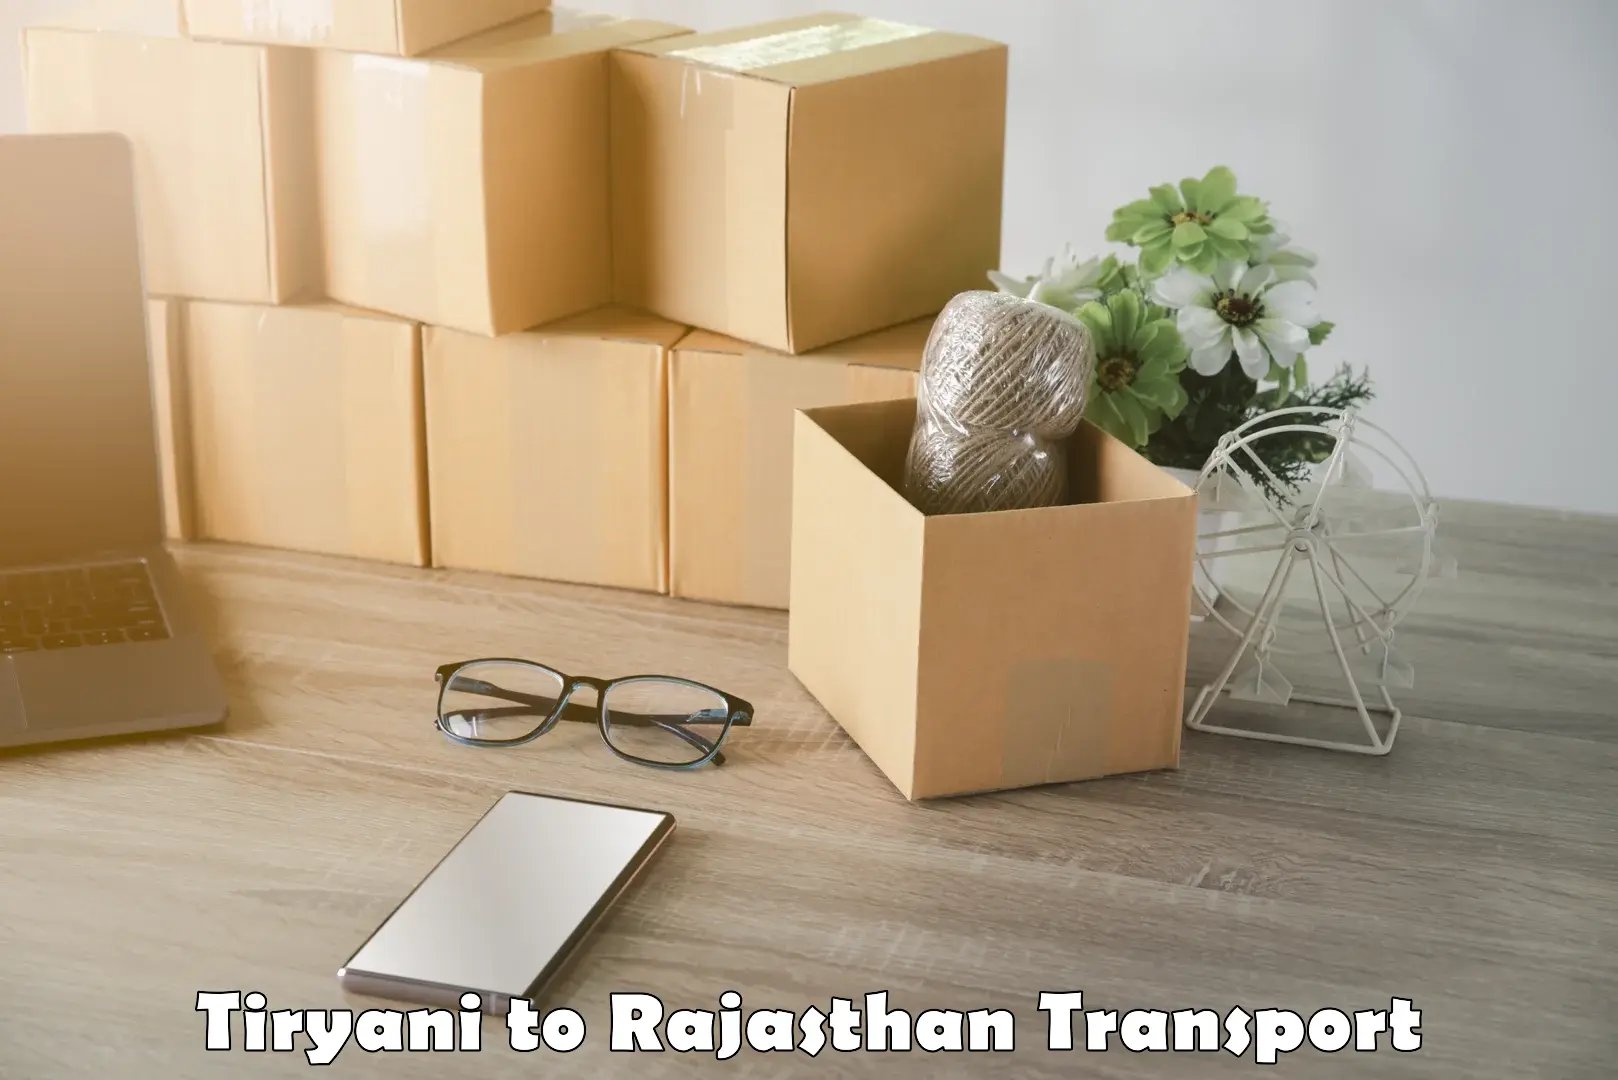 Road transport online services Tiryani to Rawatsar